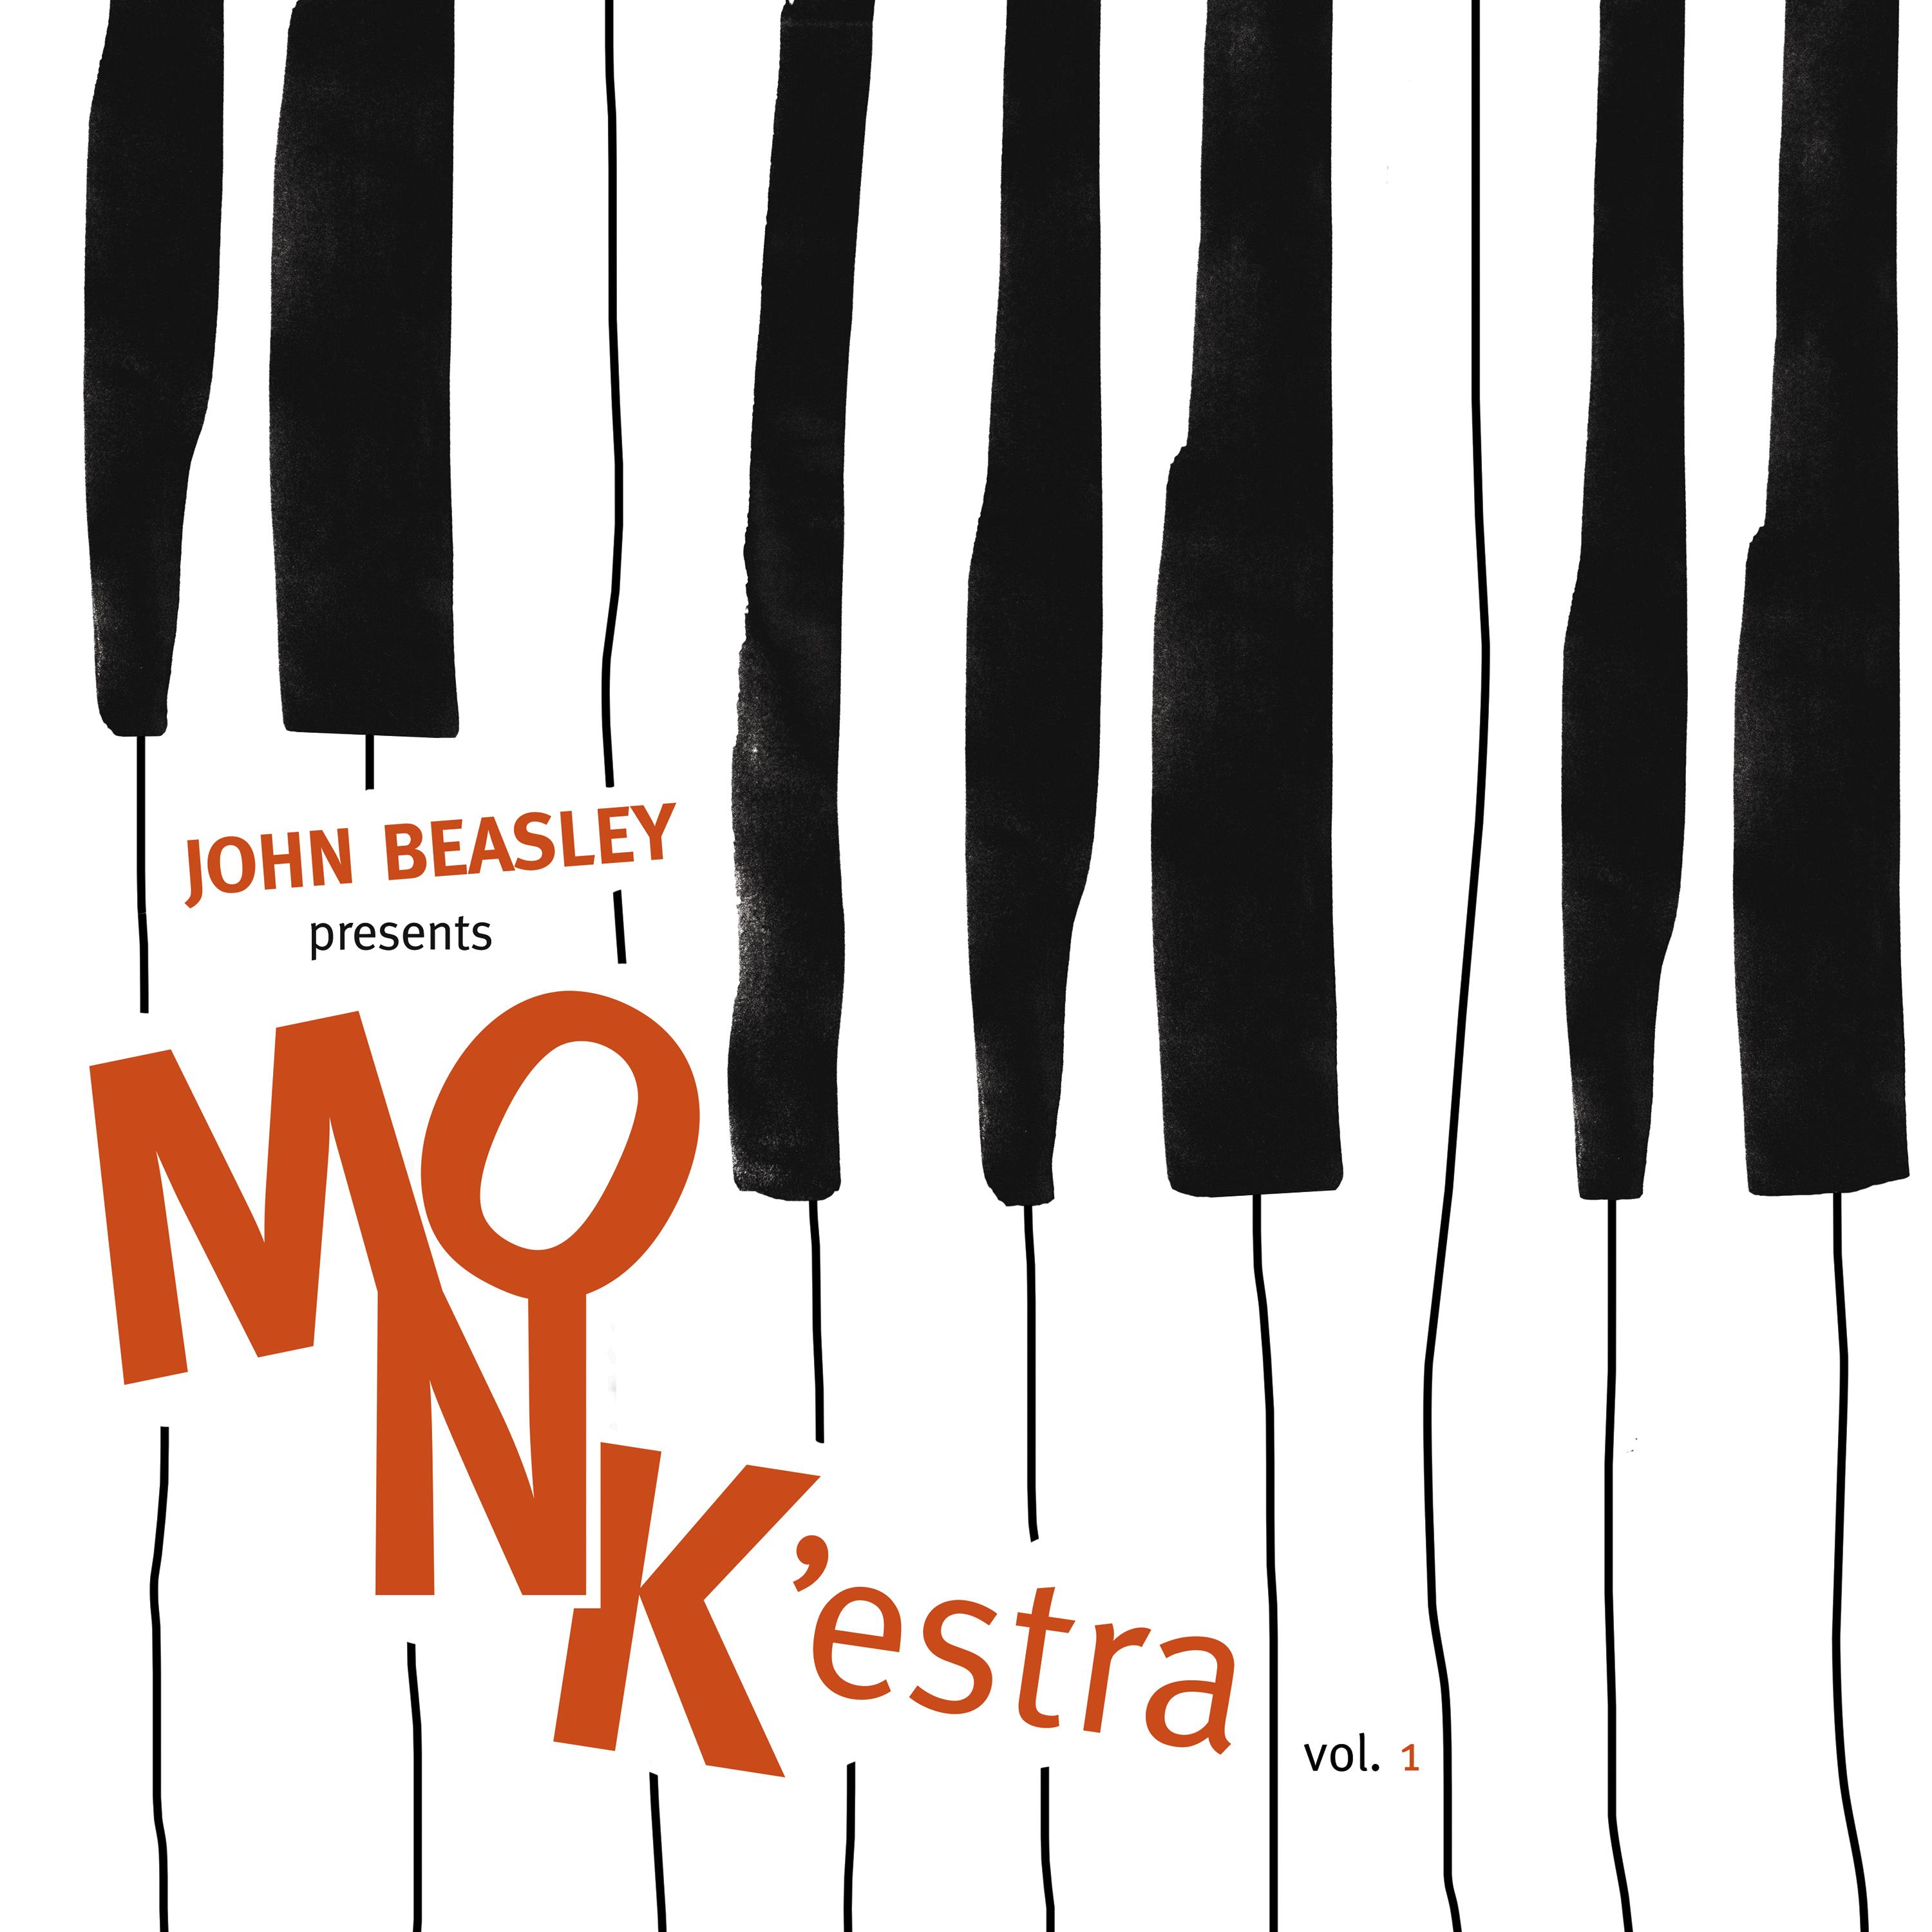 John Beasley - MONK’estra, Vol. 1 (2016) [HDTracks FLAC 24bit/96kHz]